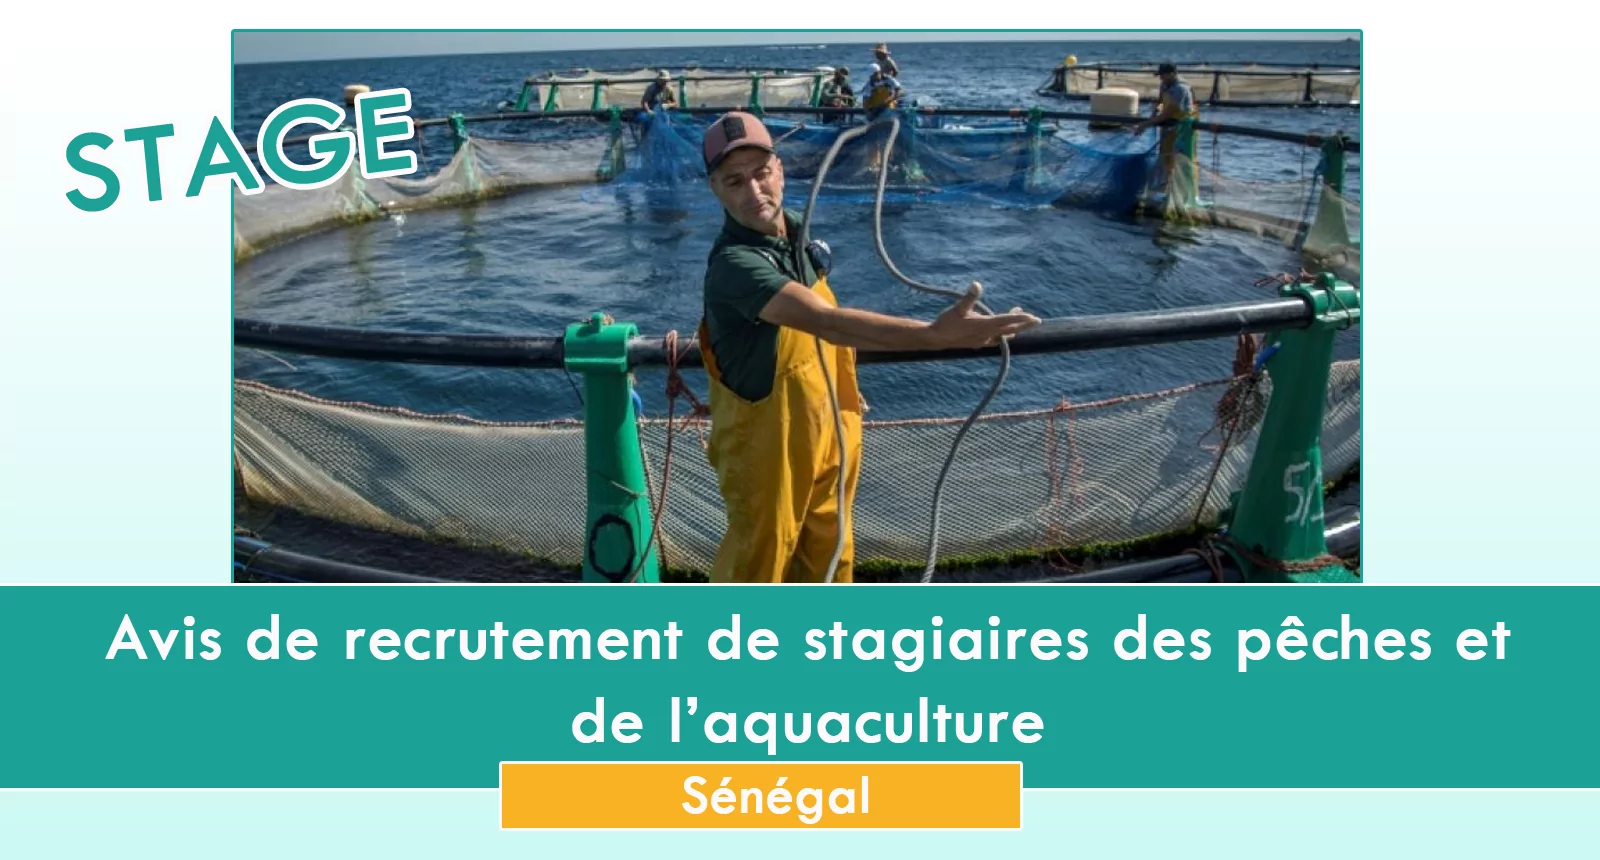 Avis de recrutement de stagiaires des pêches et de l’aquaculture, Sénégal